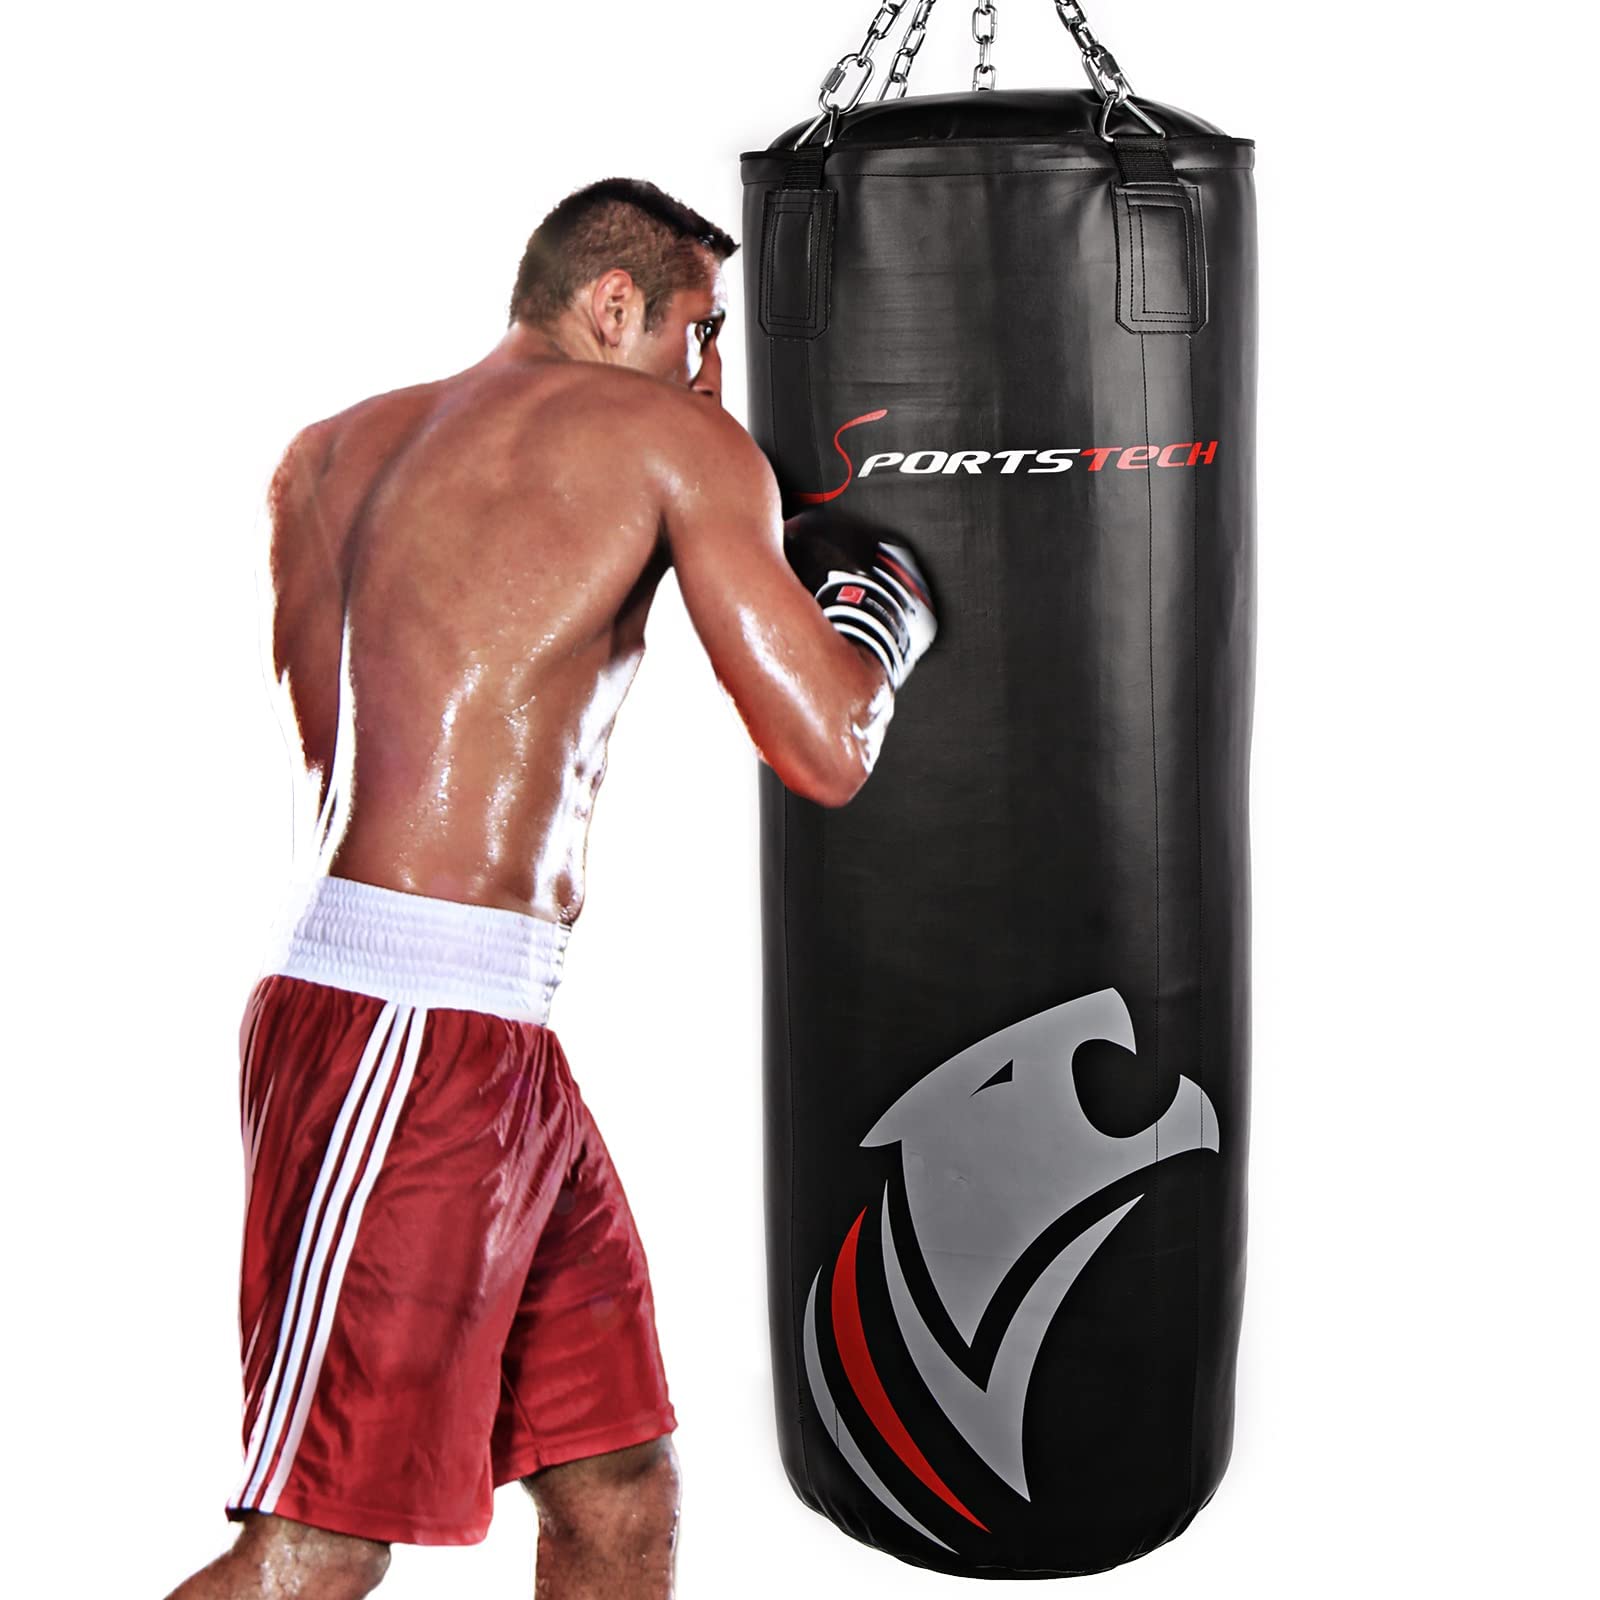 Sportstech Doppelverstärkter Kampfsport Boxsack mit 40 cm Durchmesser & mit Innovative Fünfpunkte-Stahlkette + Eigenentwickelter Haken